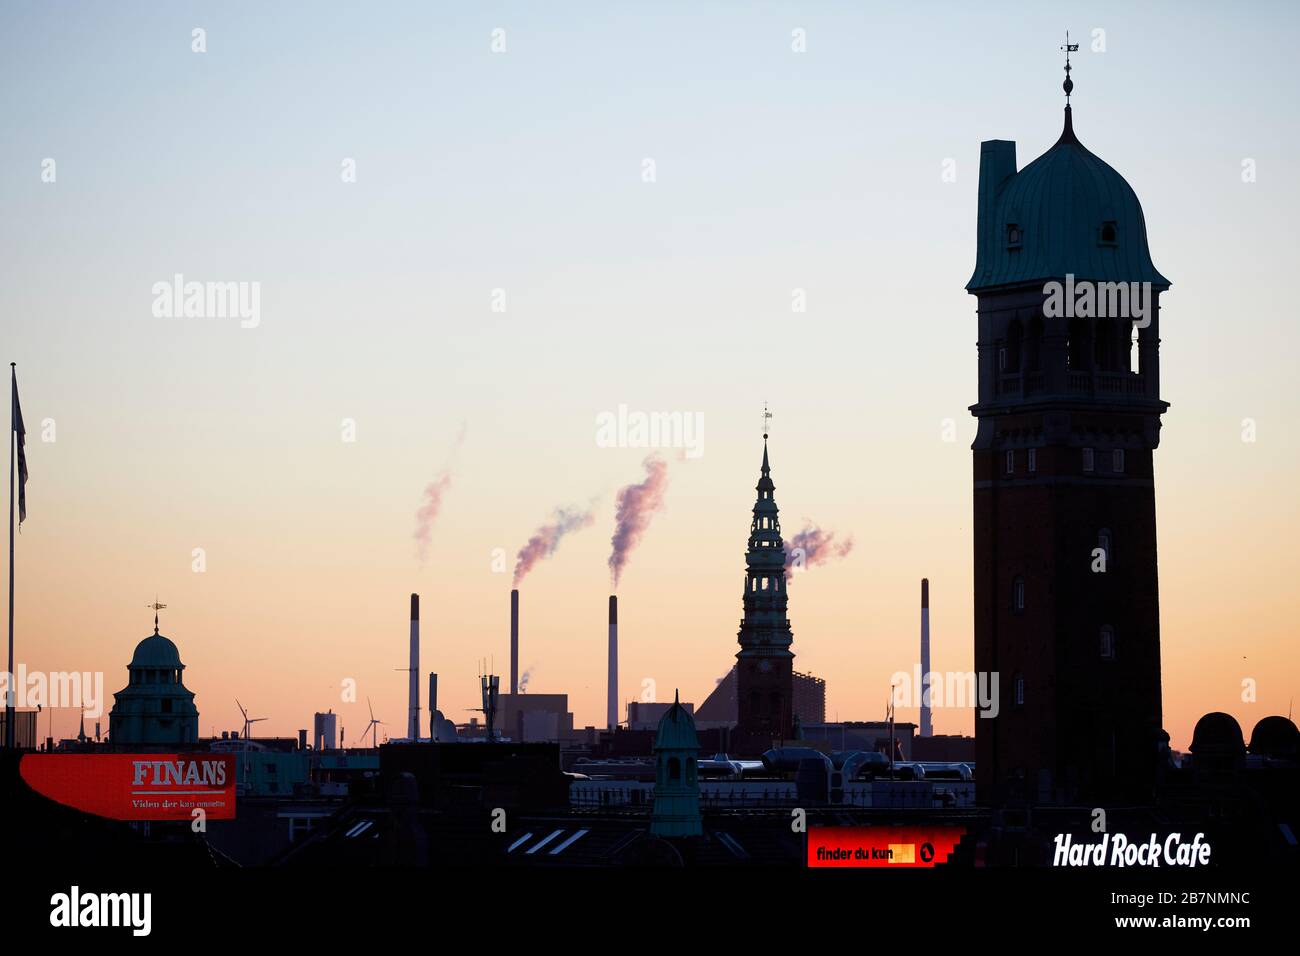 Kopenhagen, Dänemarks Hauptstadt, (rechts) die Holgaard Arkitekter Apartments Uhrturm und Hard Rock Cafe umrahmen die Skyline bei Sonnenaufgang Stockfoto